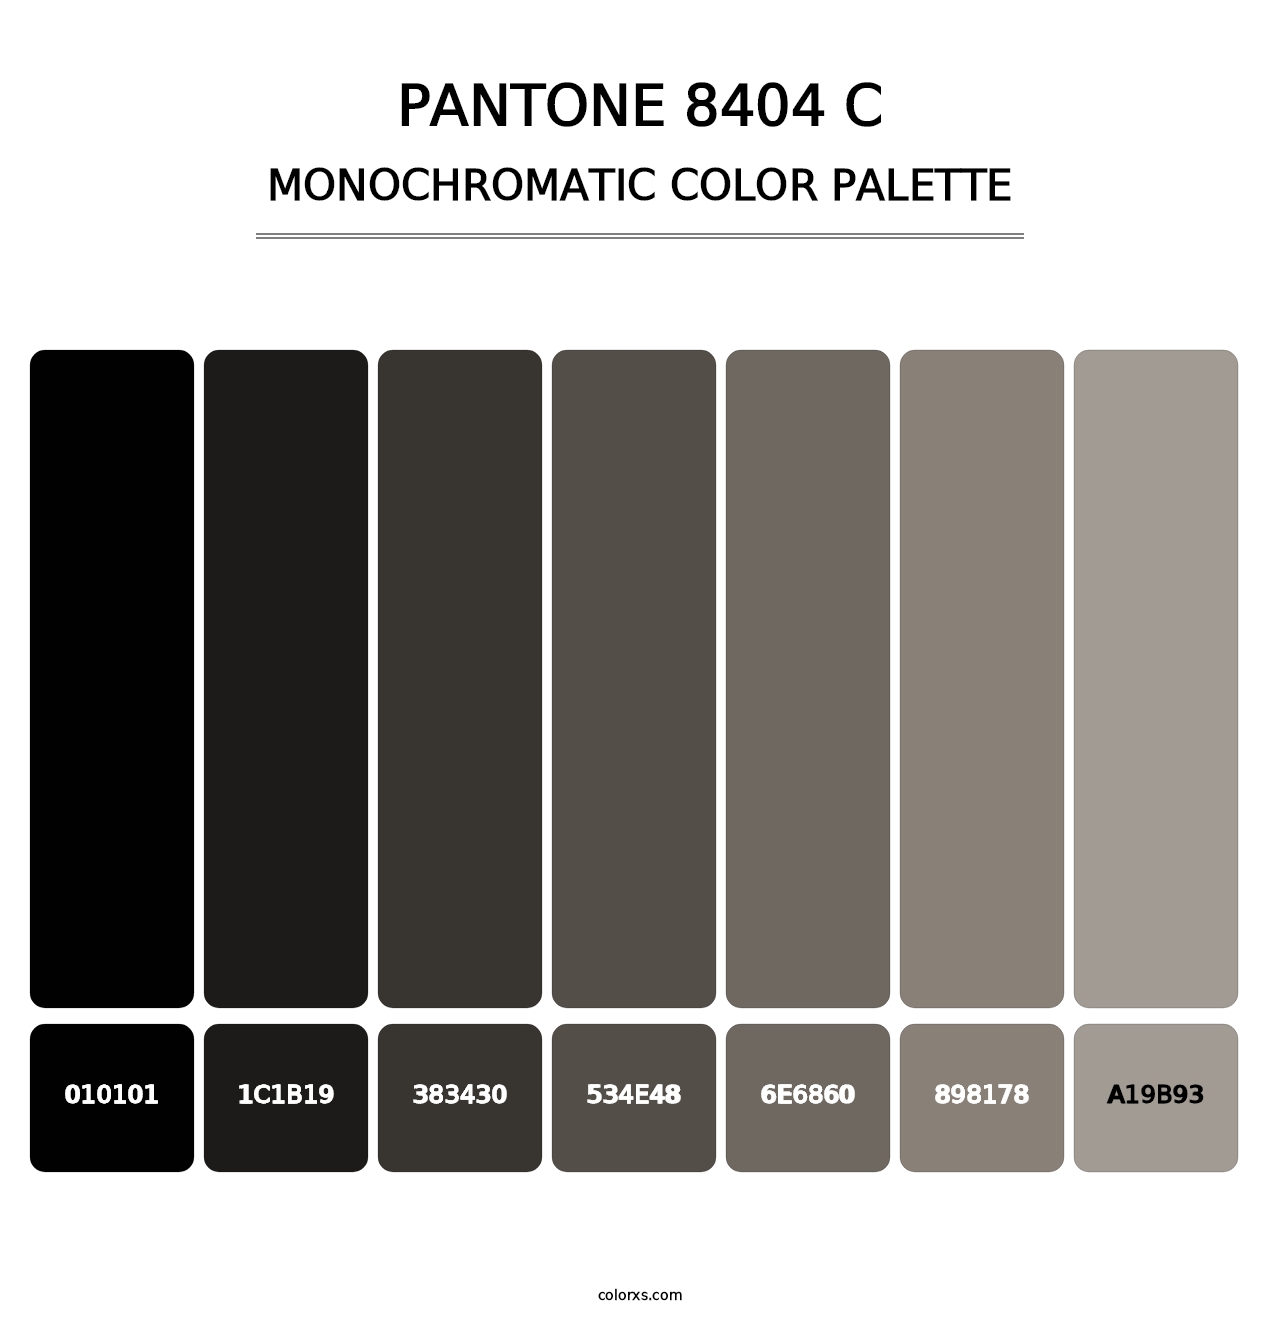 PANTONE 8404 C - Monochromatic Color Palette